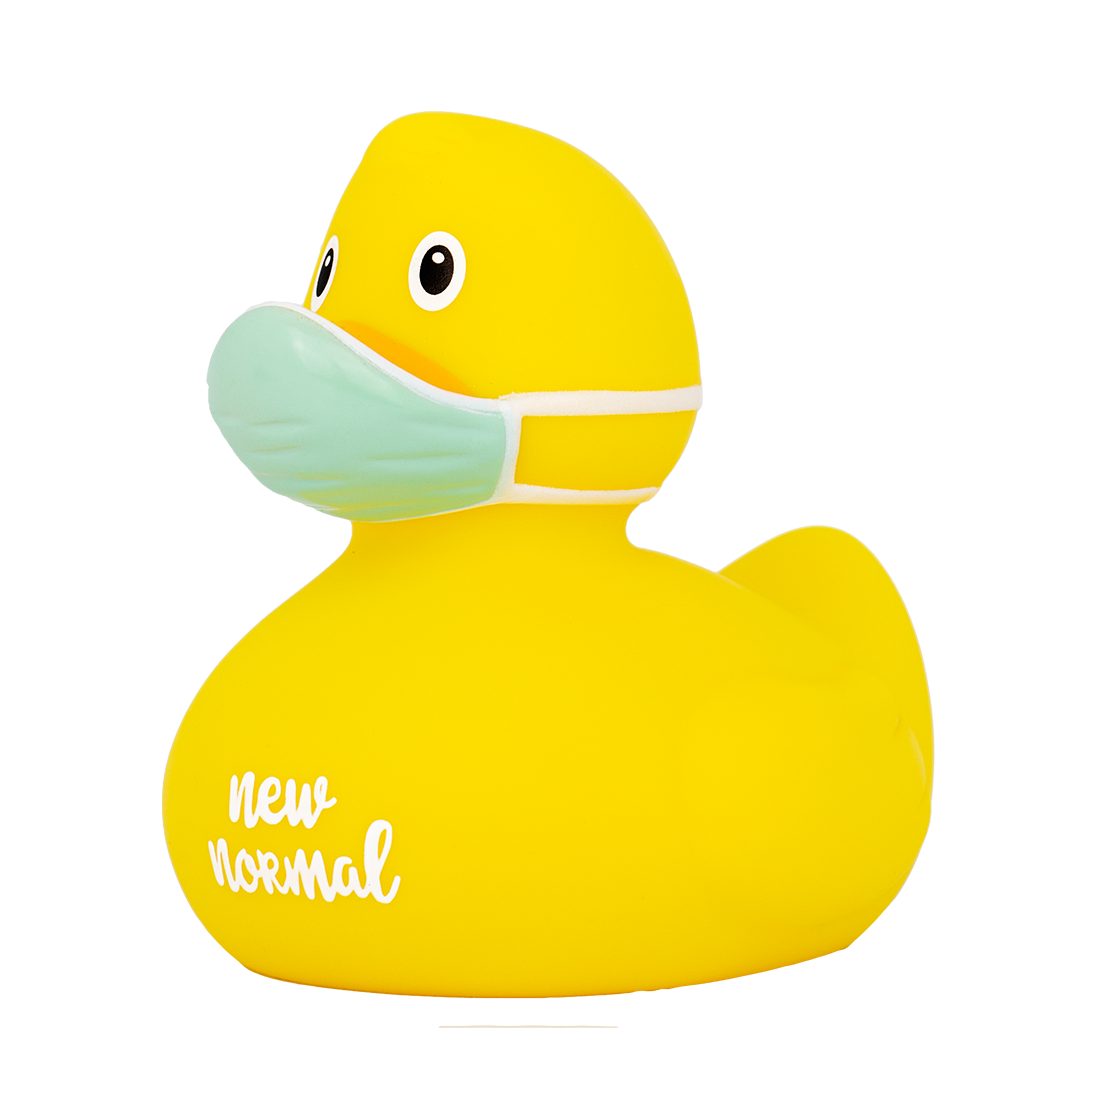 Corona Rubber Duck Yellow  Buy premium rubber ducks online